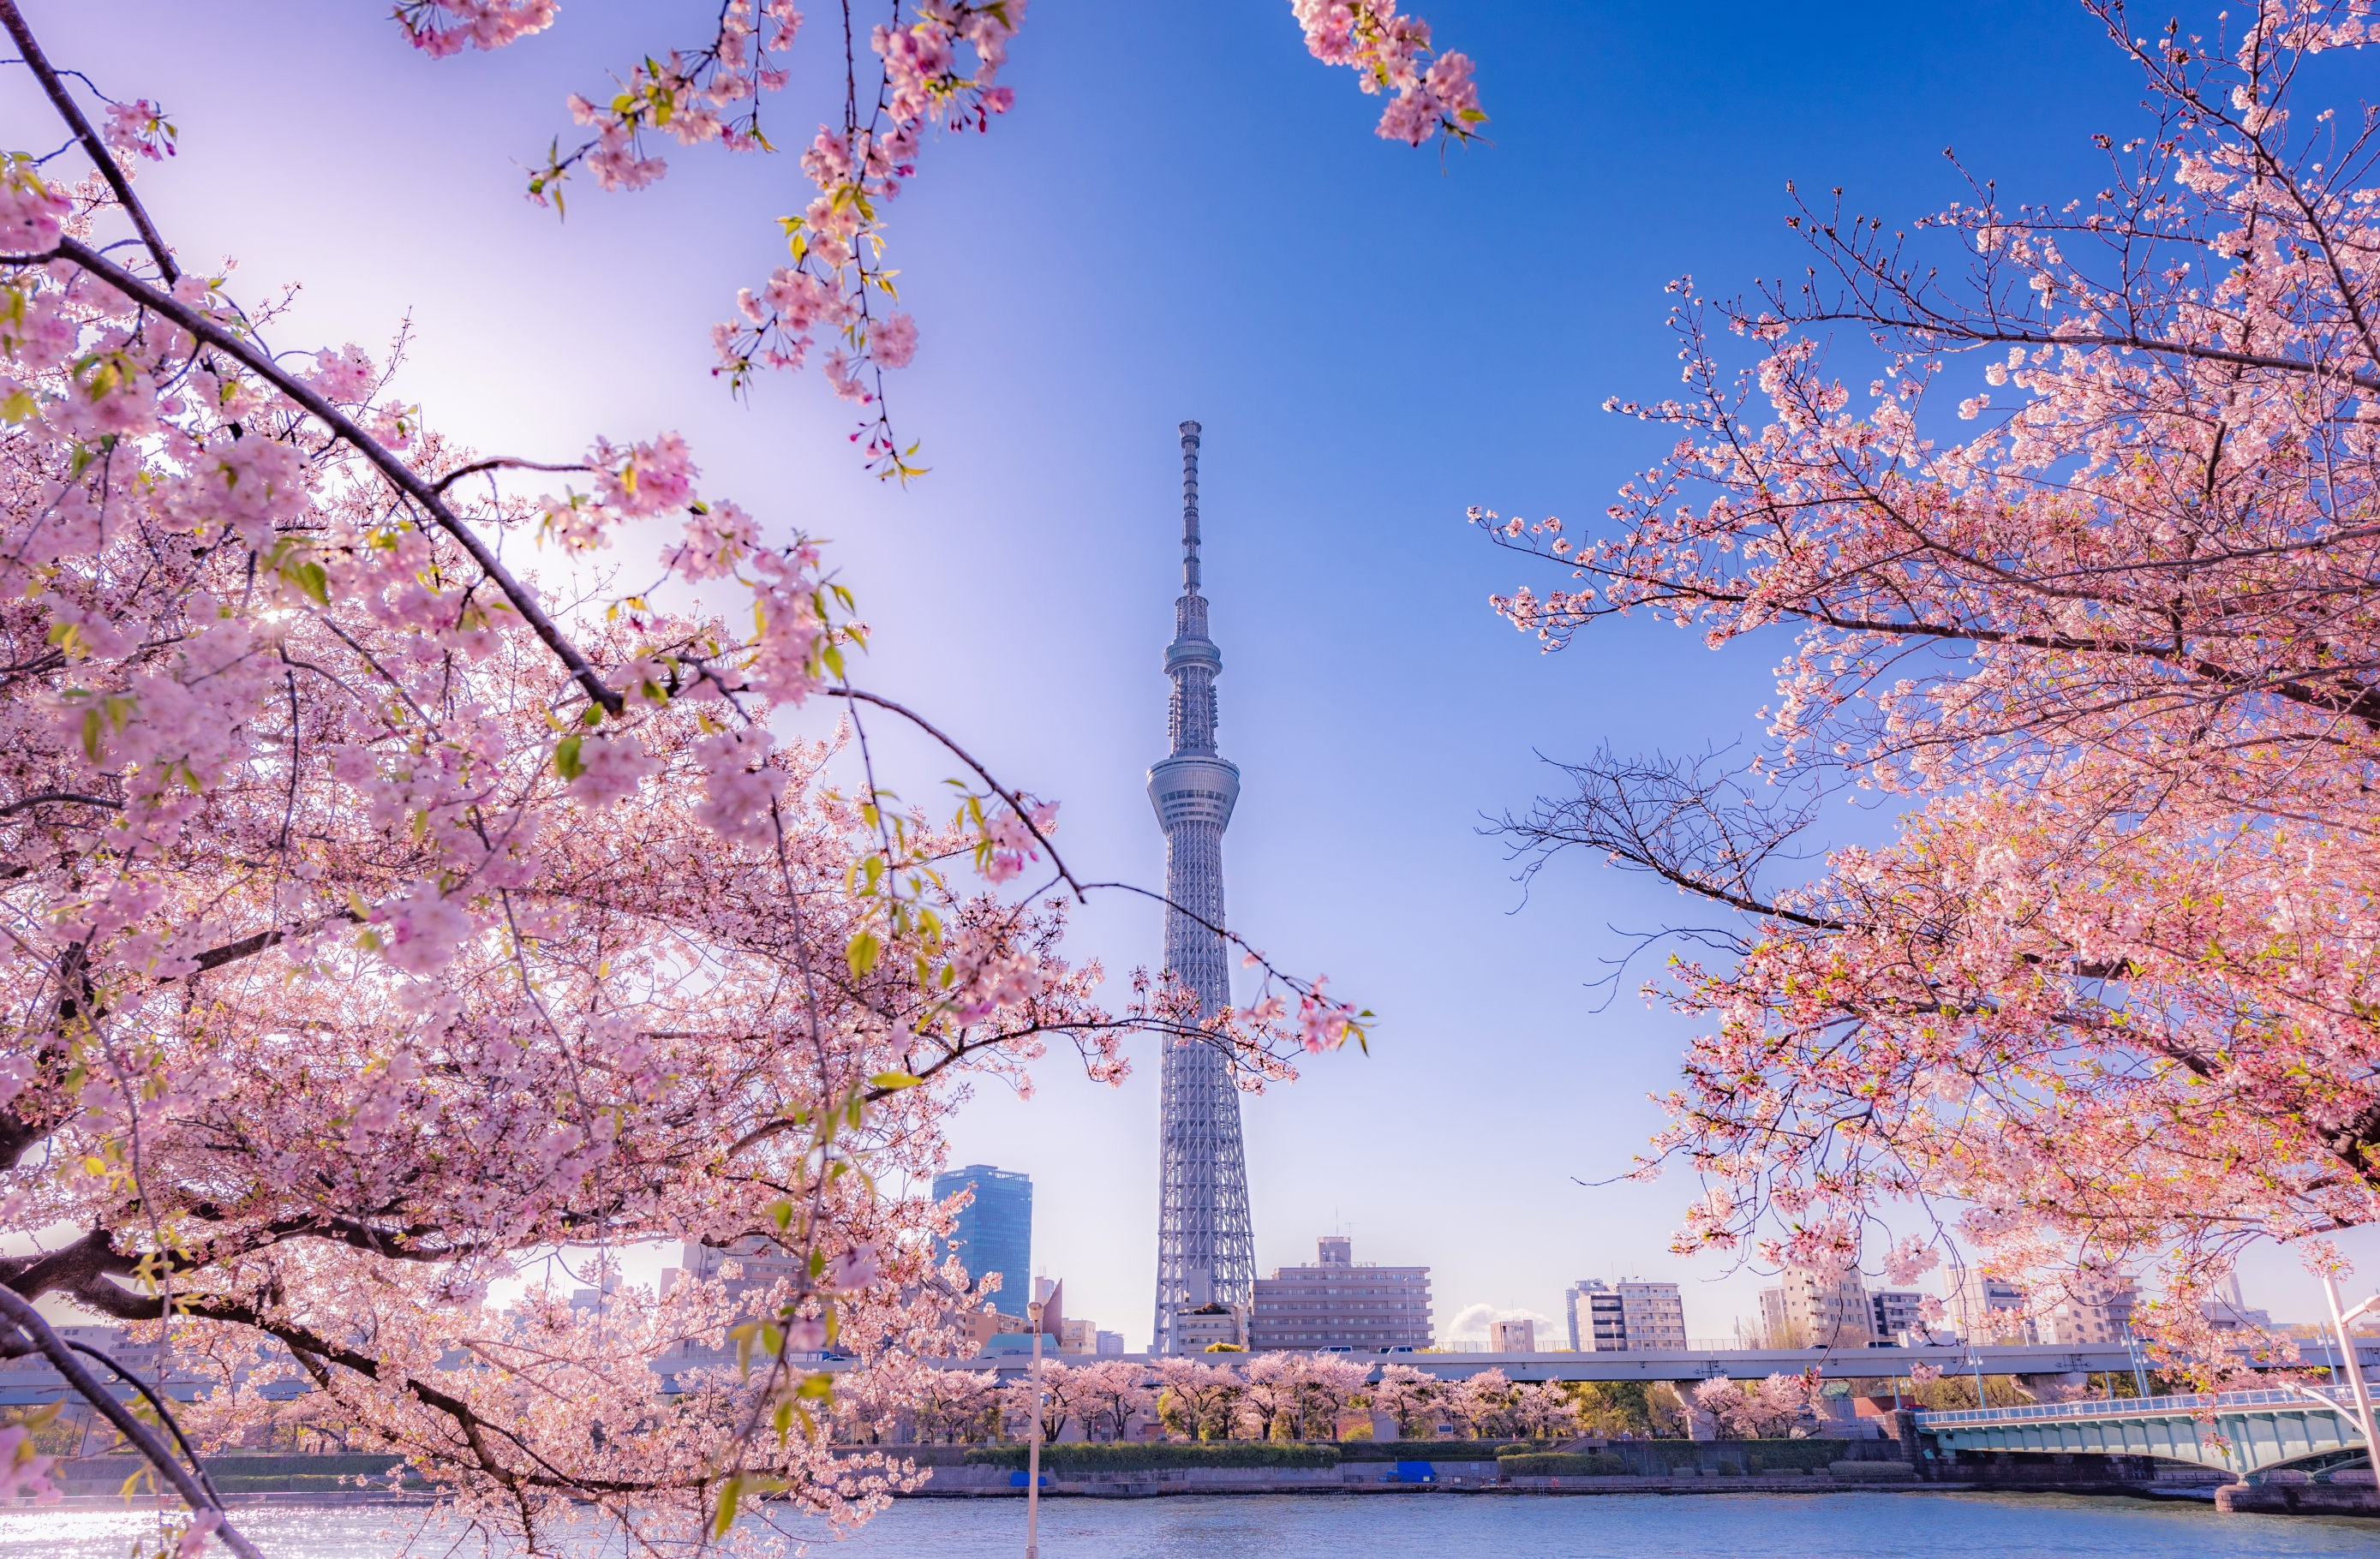 Ako planirate putovanje u Japan, neka to bude u proljeće – cvjetni prizori čine ga posebnim